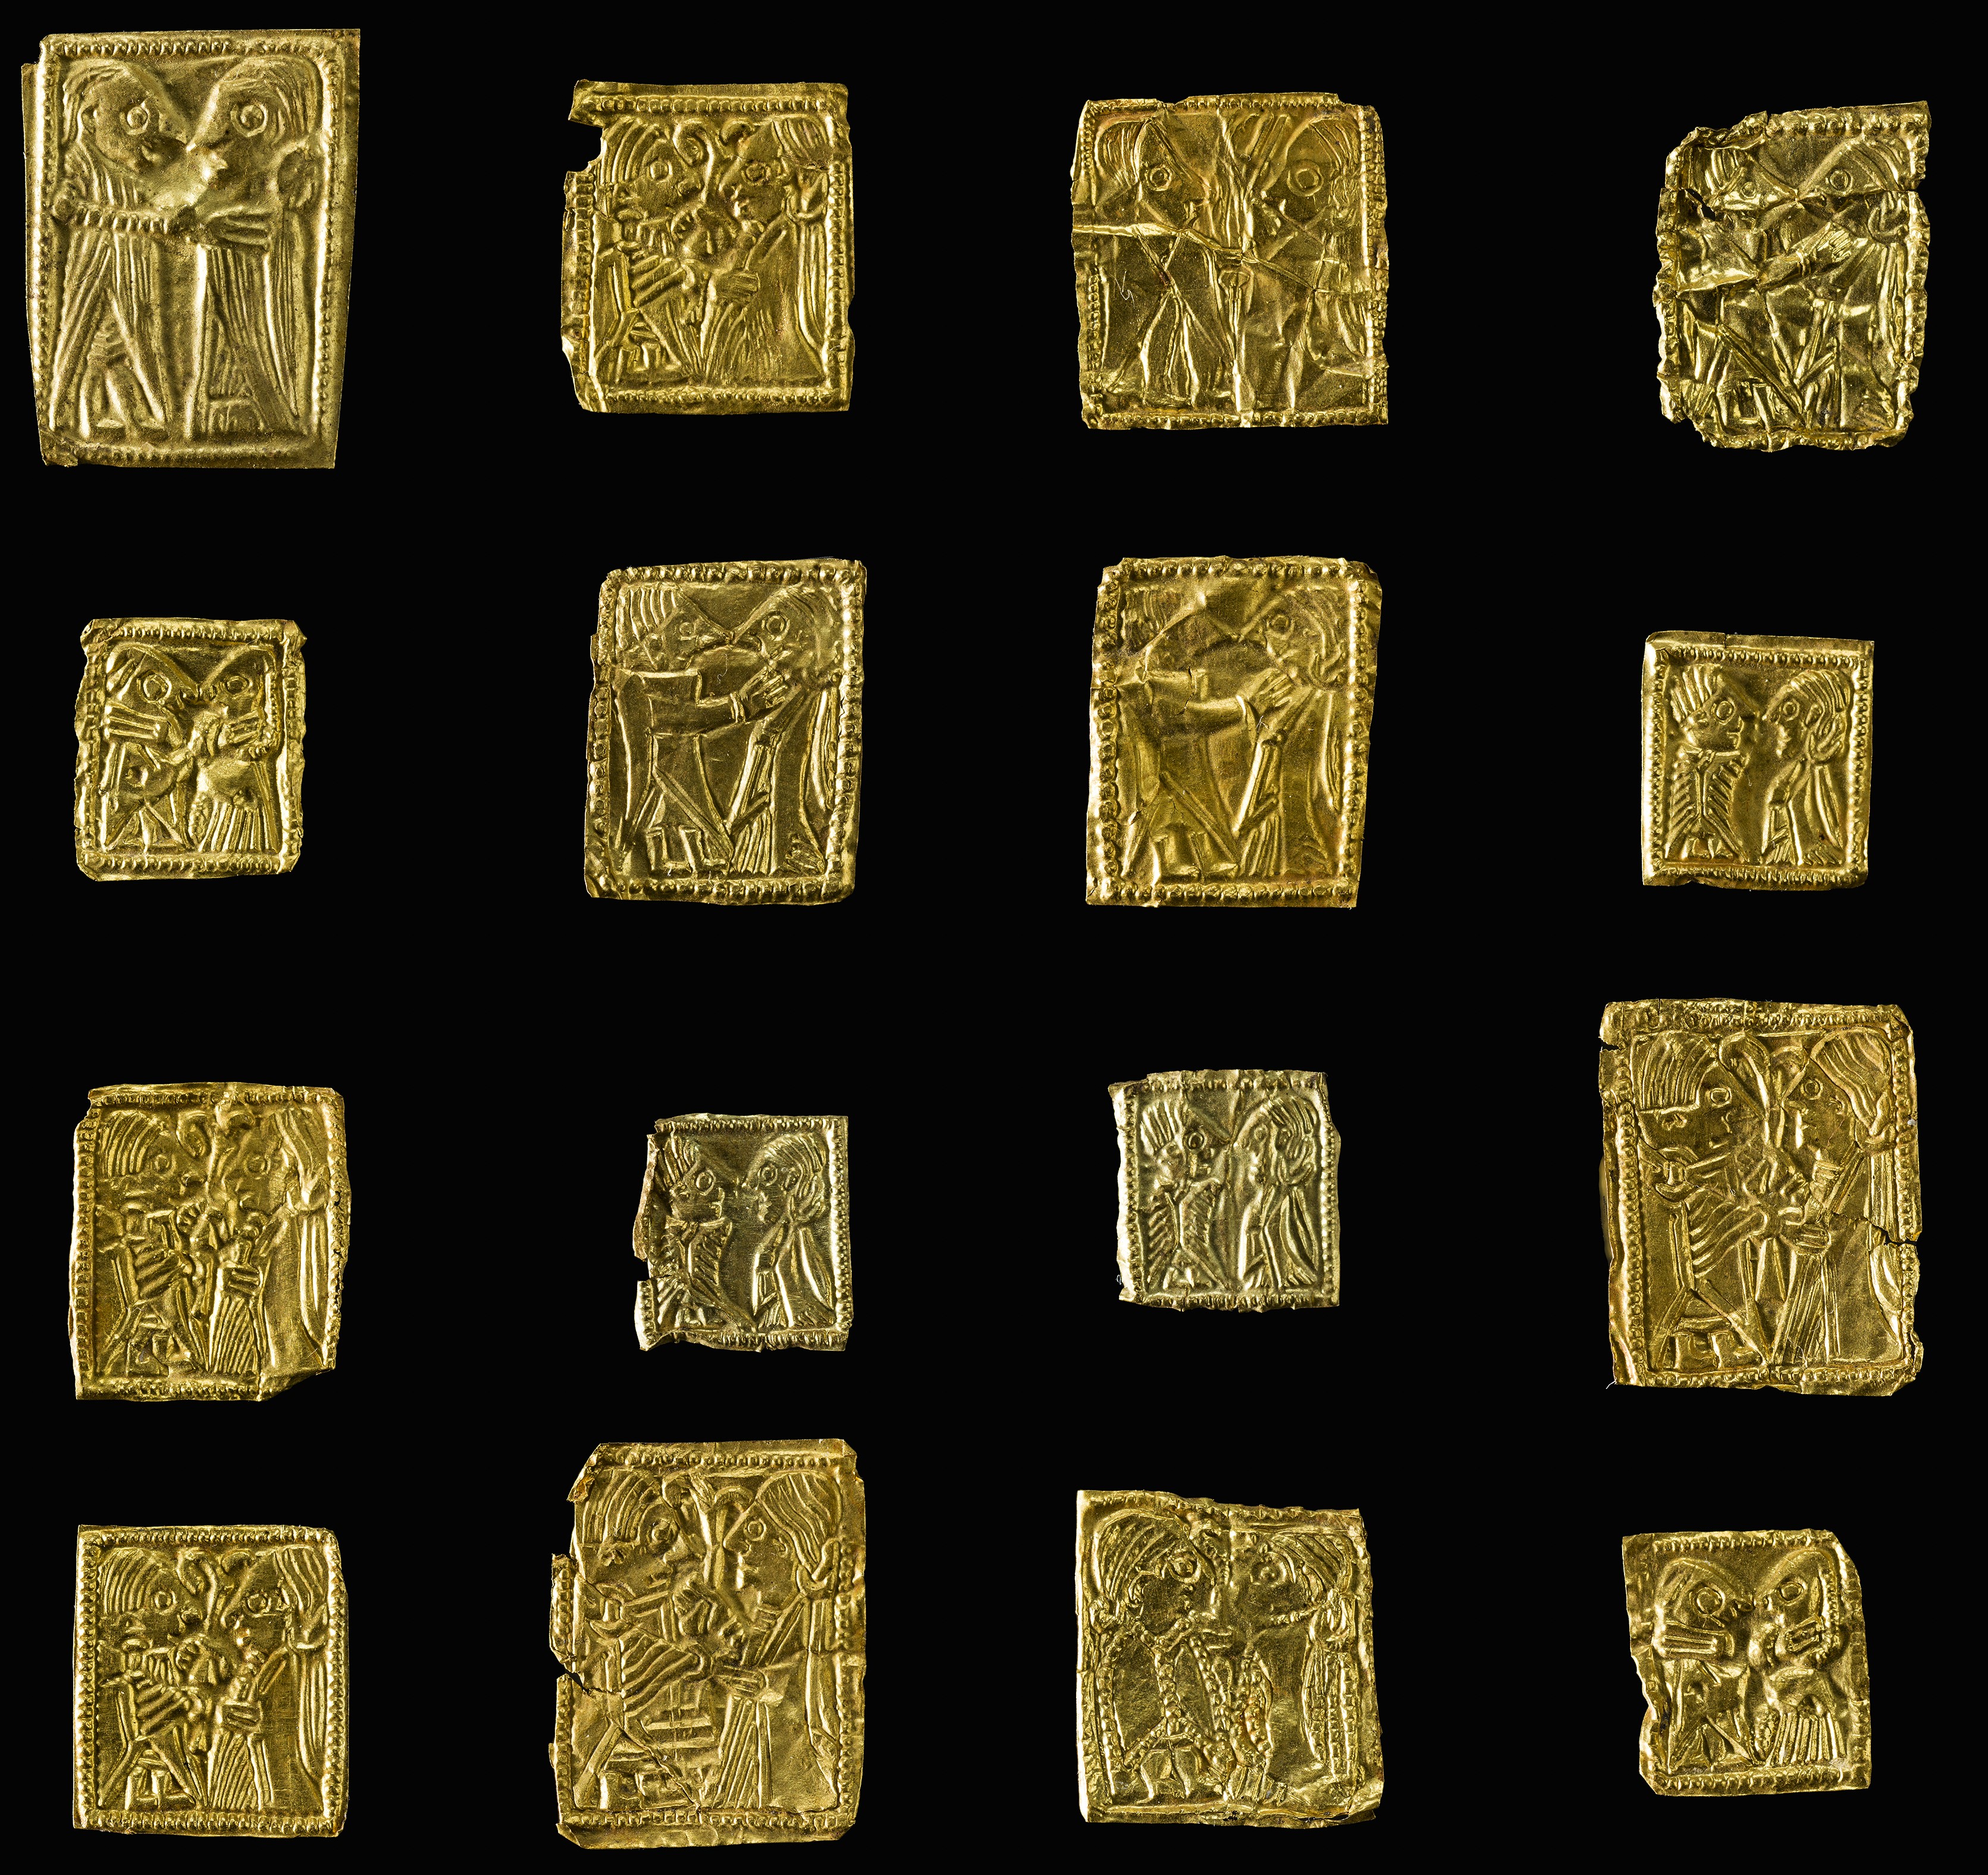 Nærbilde av bittesmå flate gullplater med motiv på, knapt større enn en fingernegl.